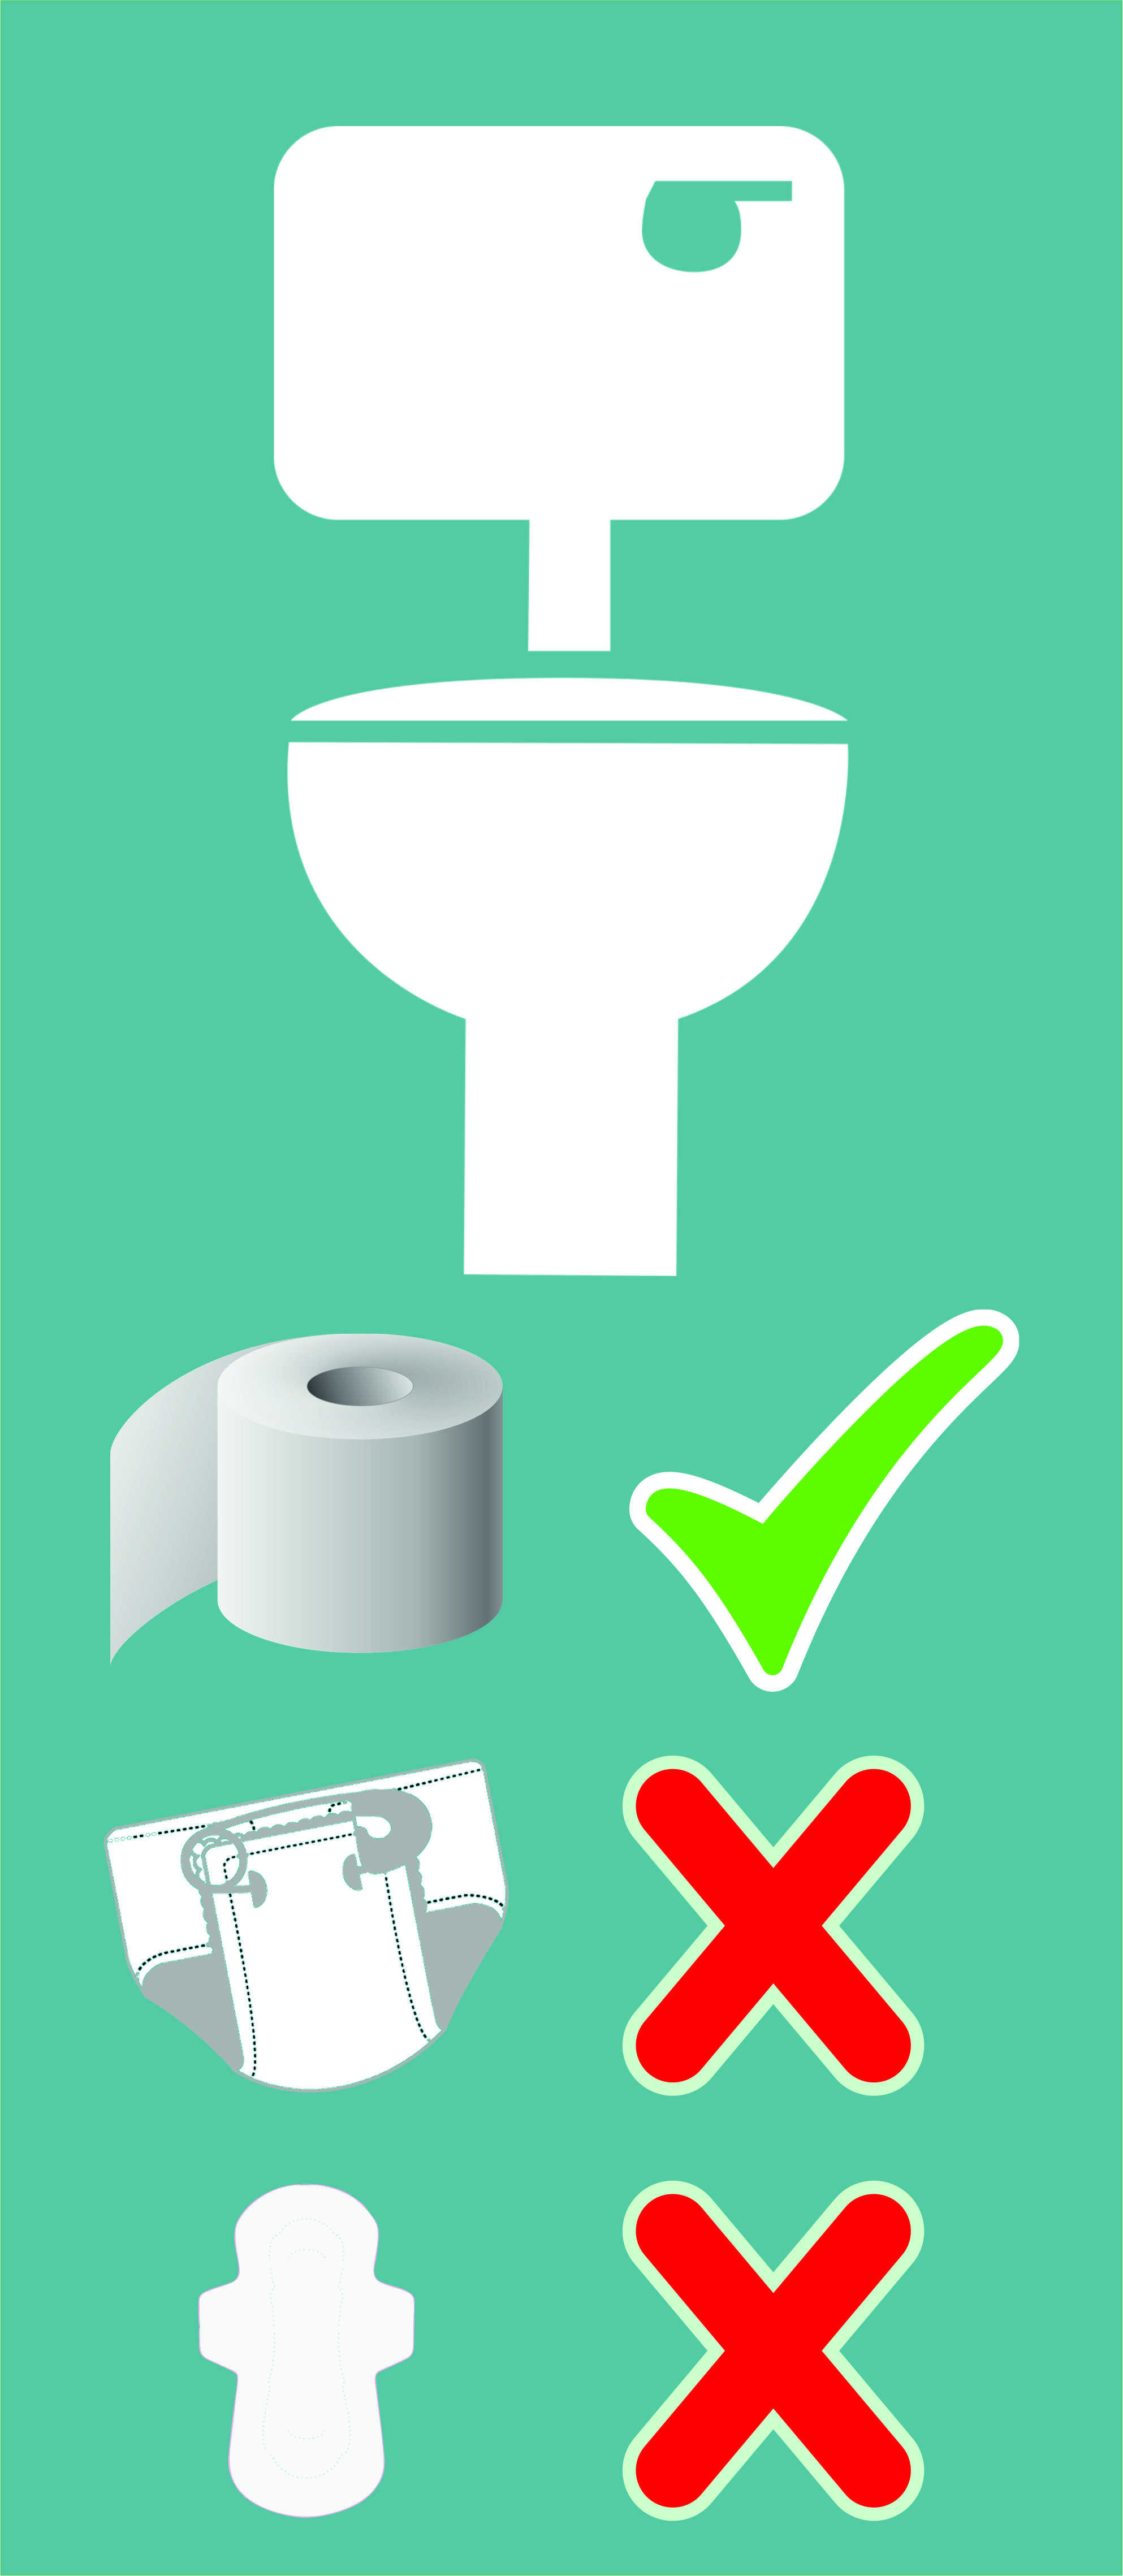 Grafika: na niebieskim tle toaleta, poniżej papier toaletowy i obok niego zielony znak dobrze, niżej podpaska i pielucha obok nich znak x źle